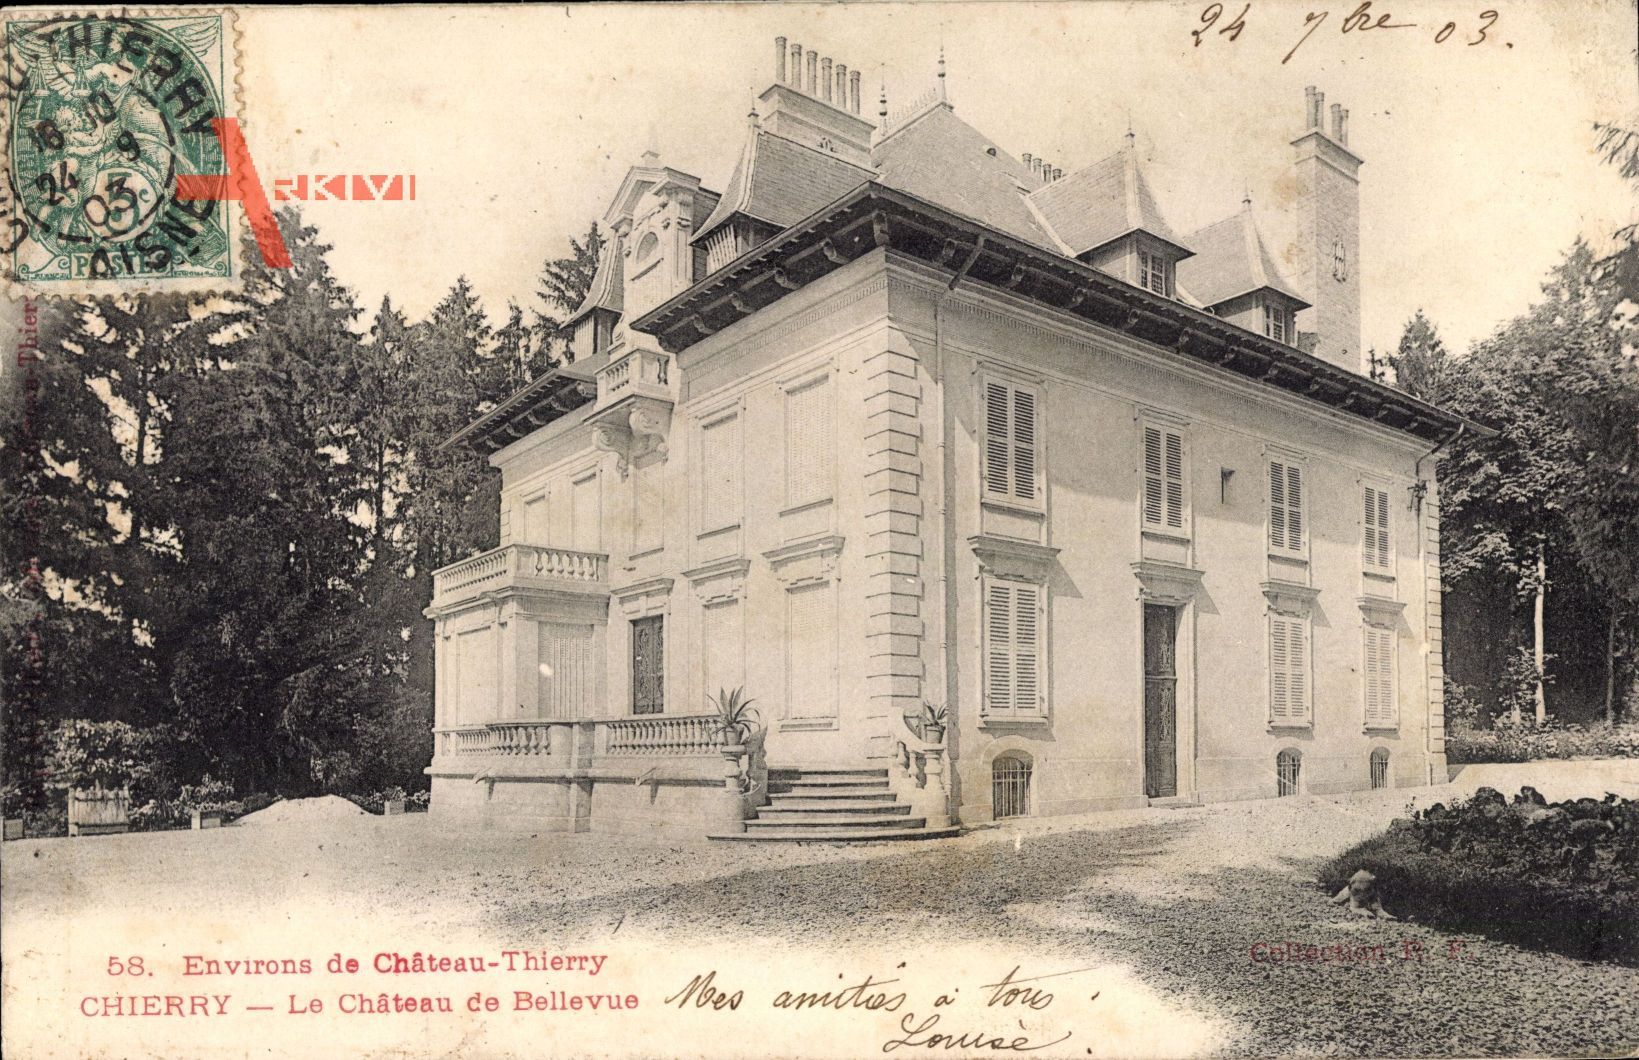 Chierry Aisne, Environs de Château Thierry, Château de Bellevue